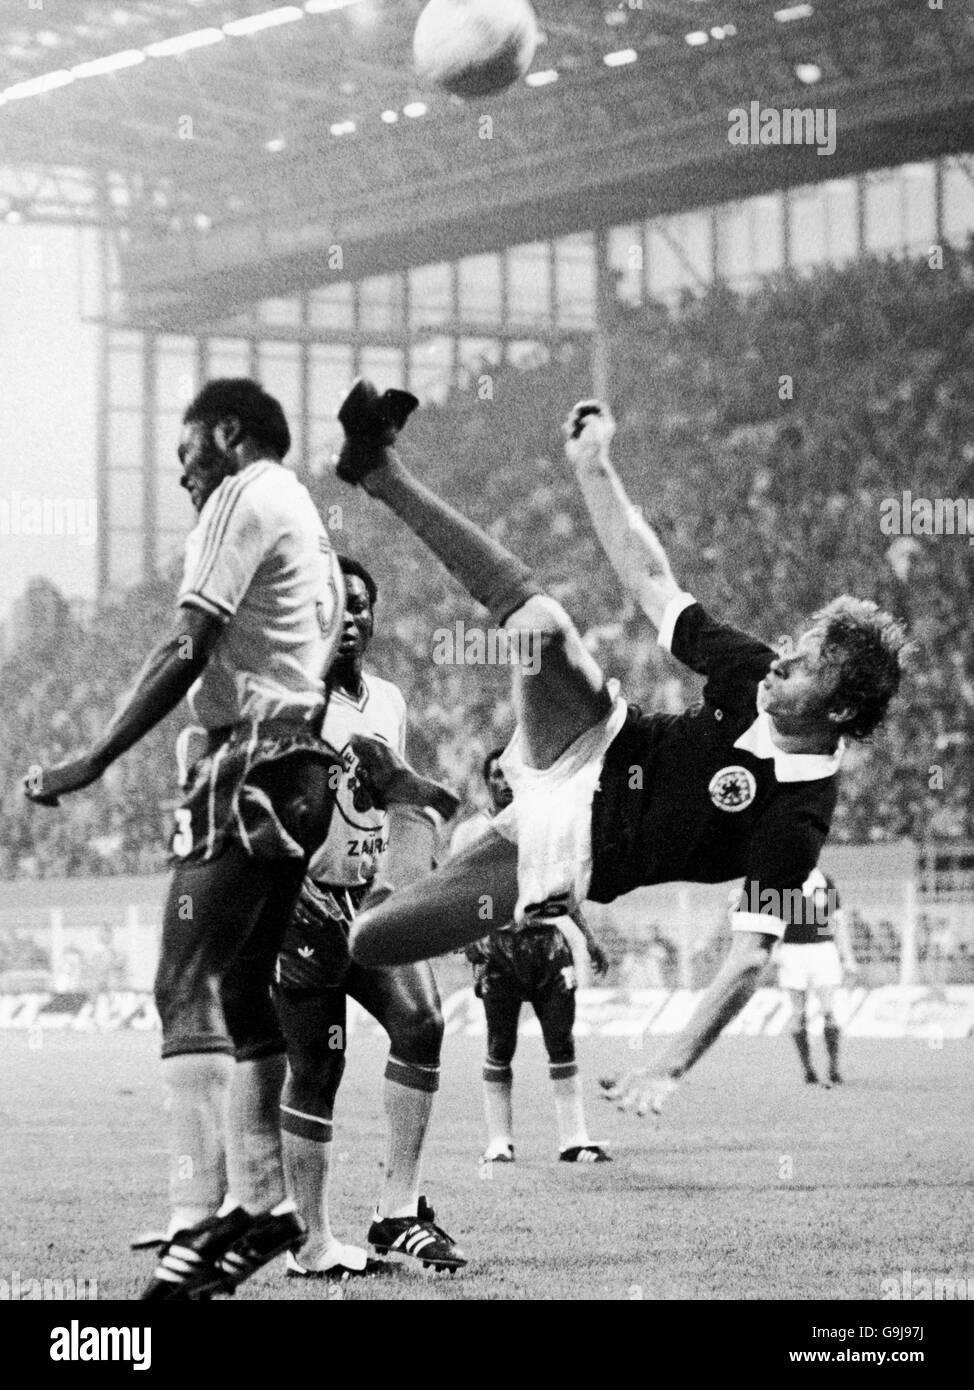 Calcio - Coppa del mondo FIFA Germania occidentale 1974 - Gruppo 2 - Zaire / Scozia - Westfalenstadion, Dortmund. Mwanza Mukombo (l) di Zaire si intromica mentre la Legge scozzese di Denis (c) tenta un calcio d'testa Foto Stock